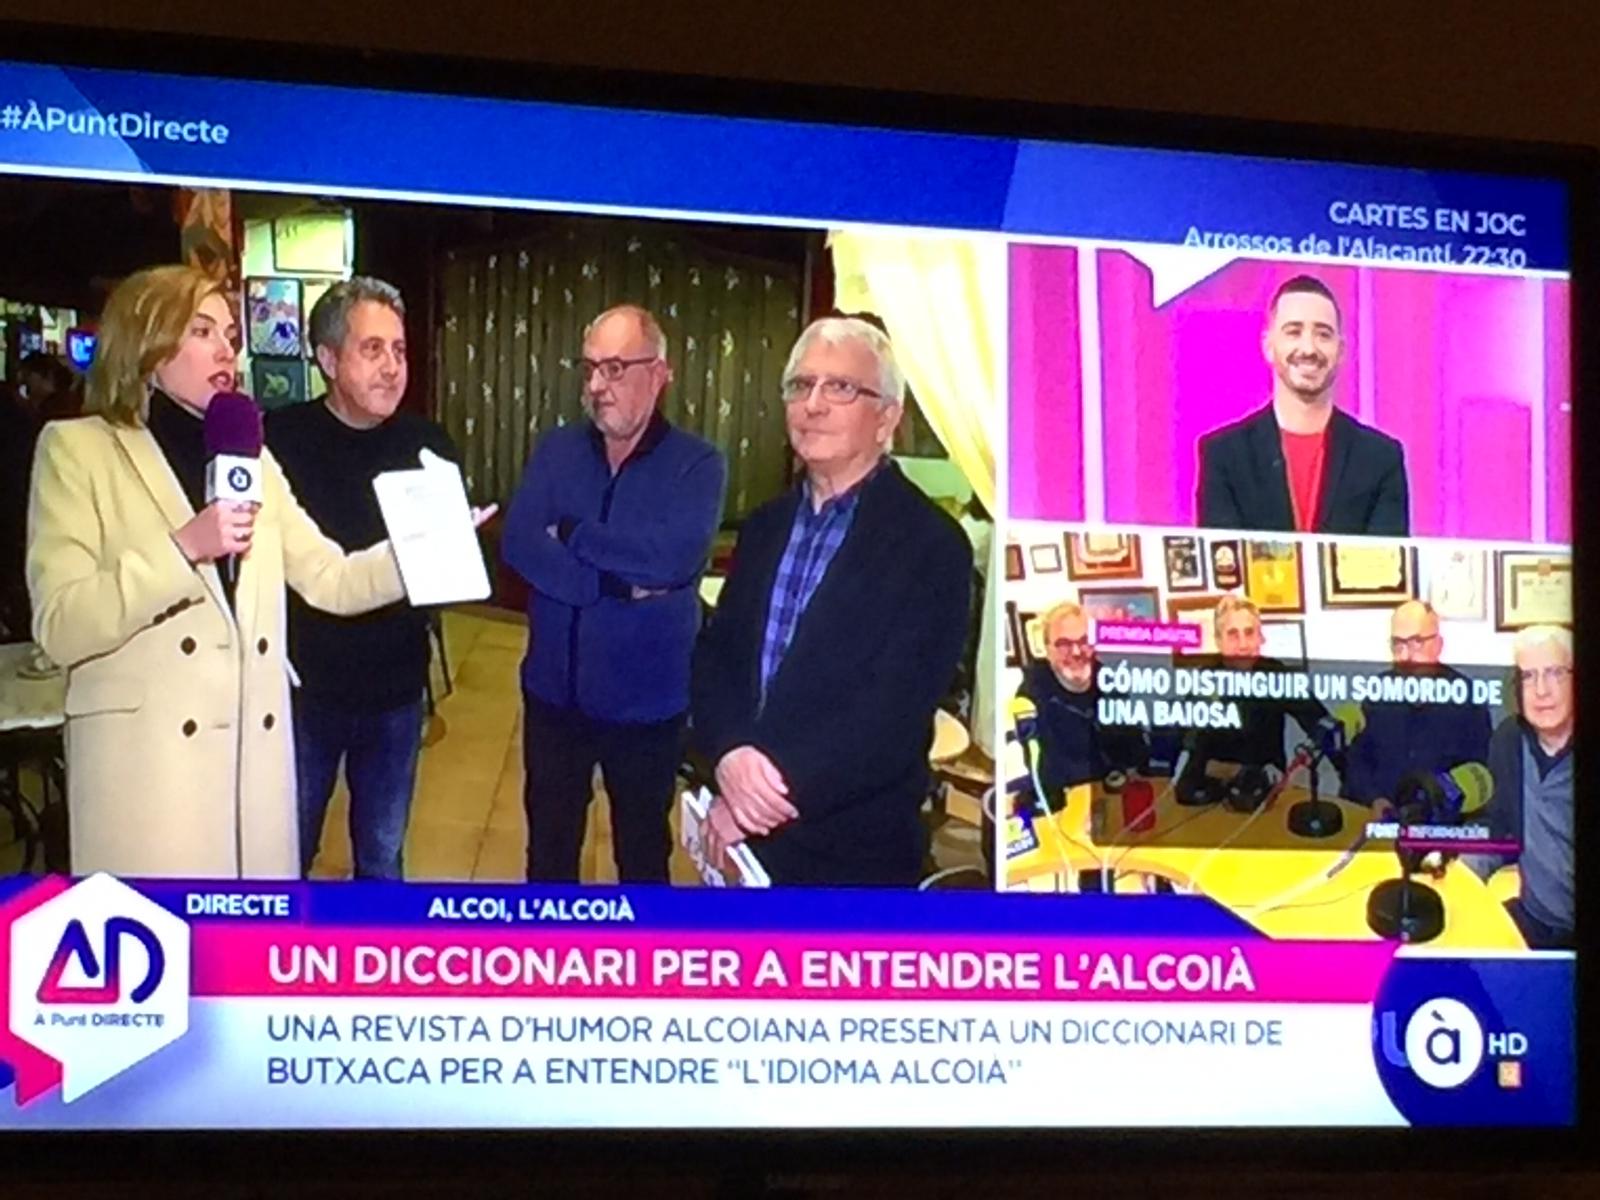 El “Diccionari de butxaca” cruza fronteras y aparece en la televisión autonómica valenciana